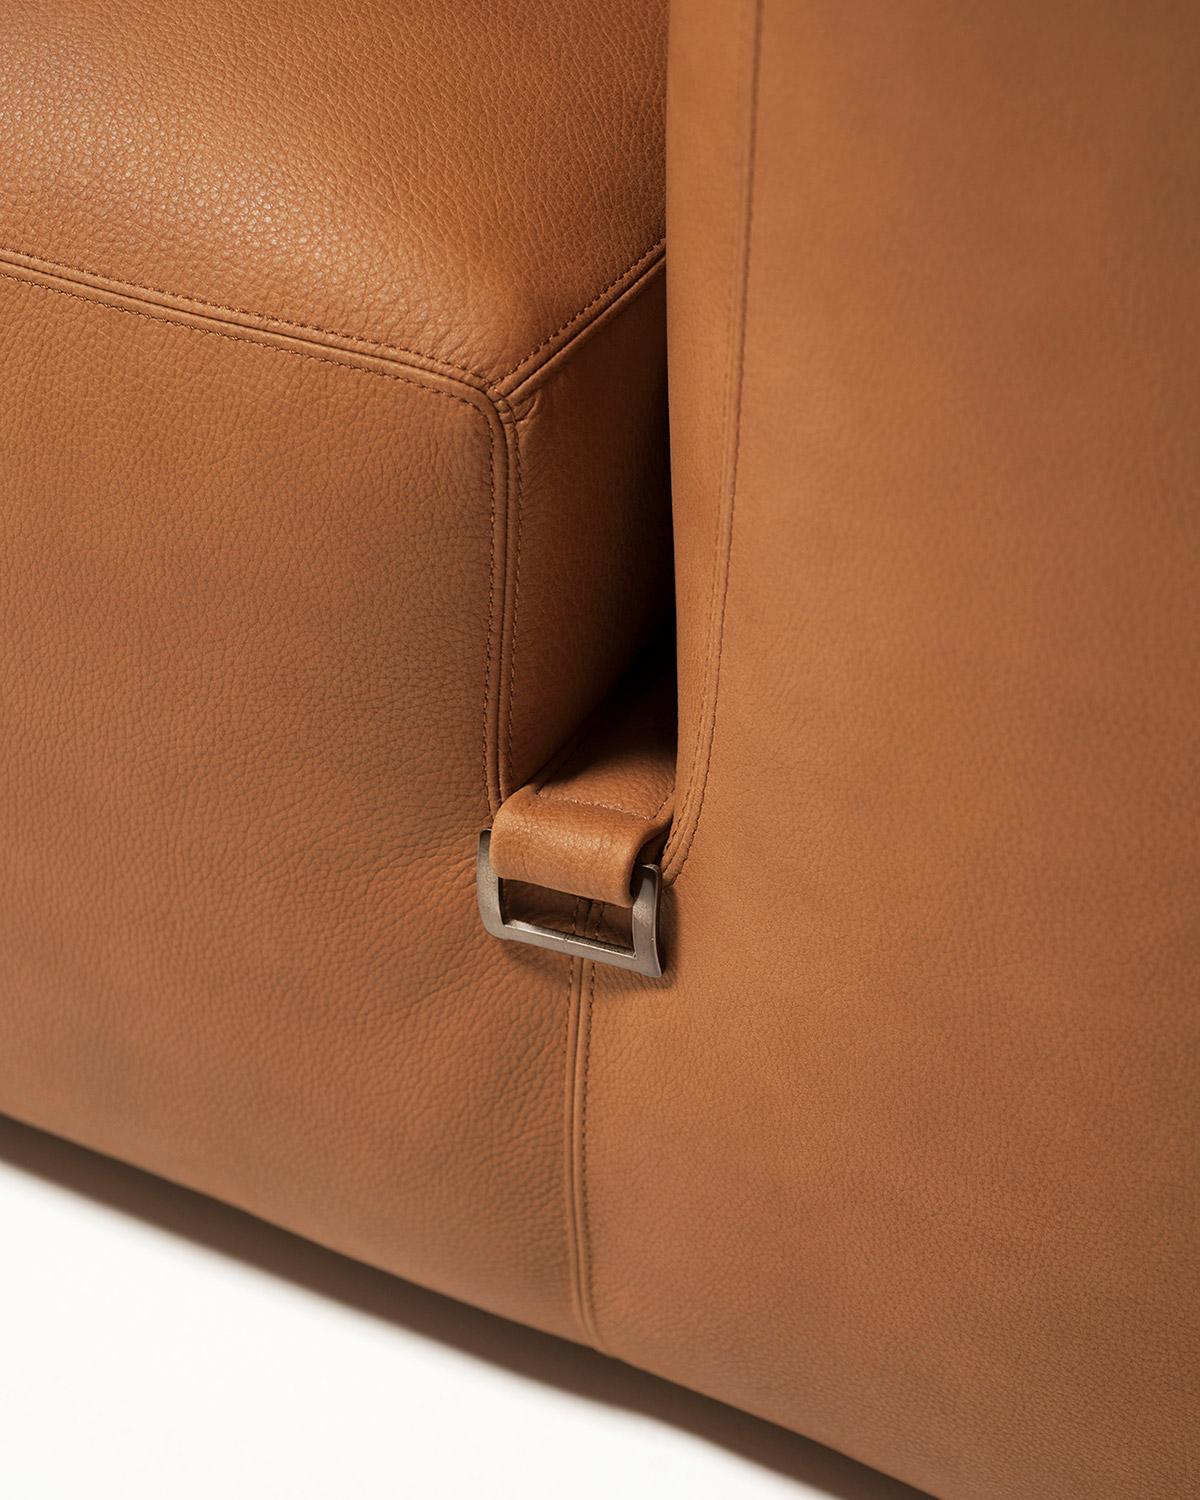 Contemporary Customizable Tacchini Le Mura Modular Sofa Designed by  Mario Bellini For Sale